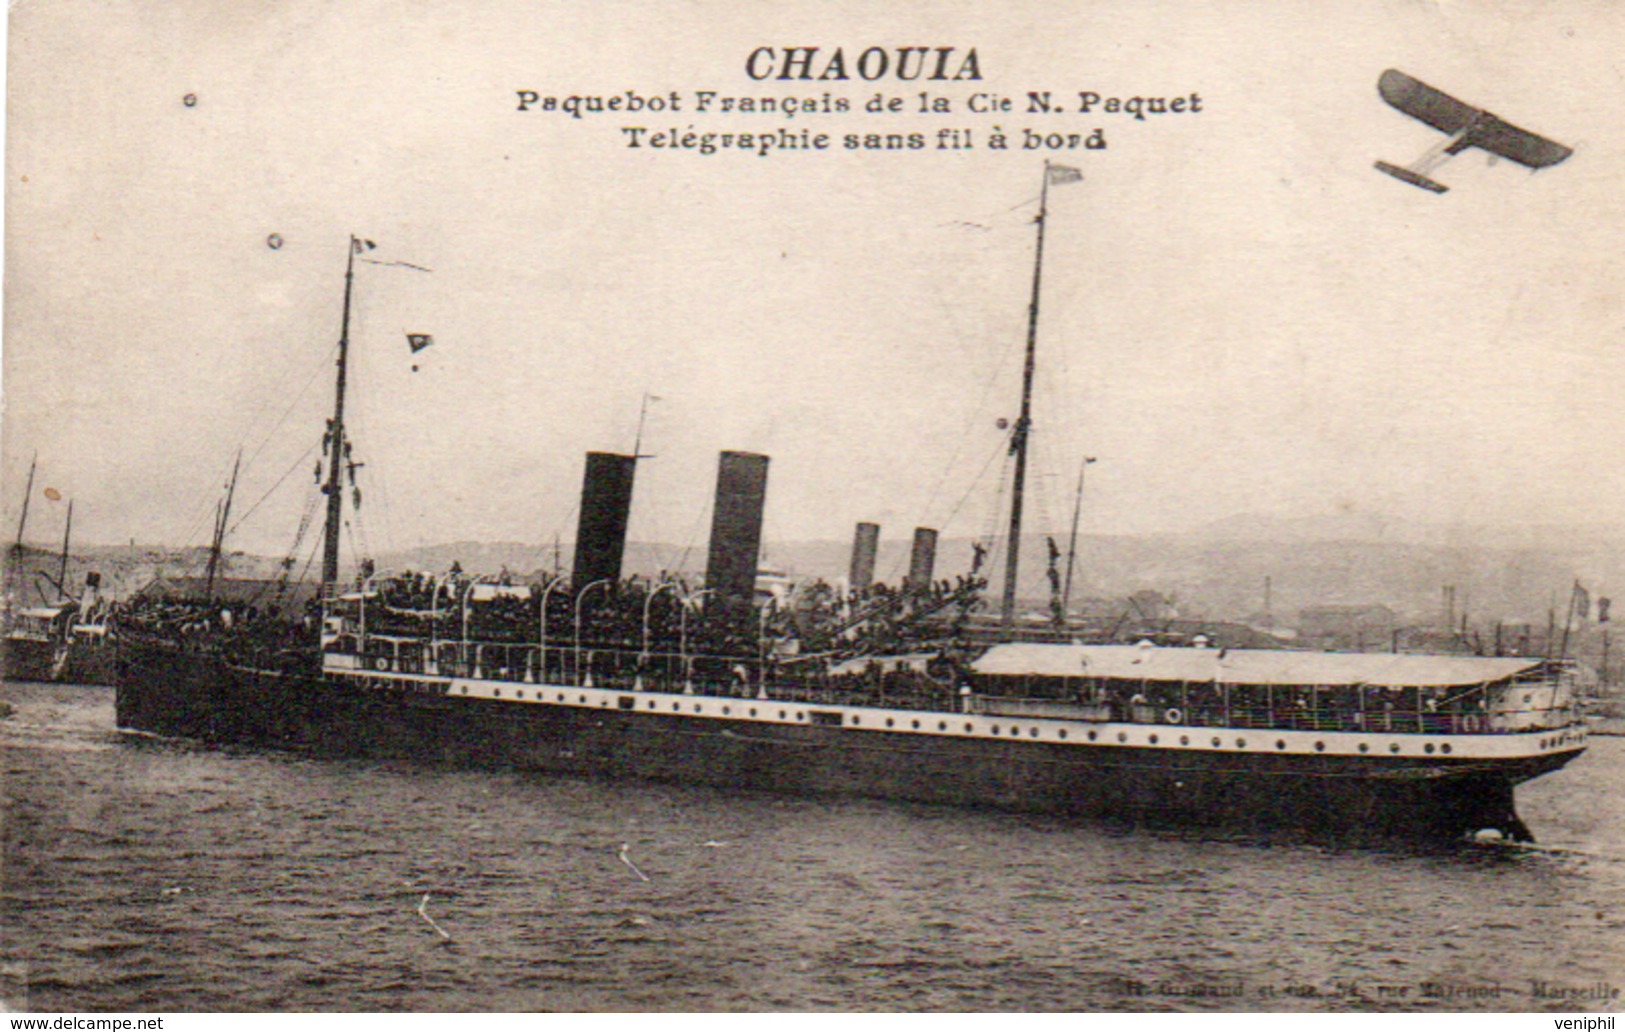 PAQUEBOT "CHAOUIA" CIE N.PAQUET - TELEGRAPHE SANS FIL A BORD - 1916 - Passagiersschepen